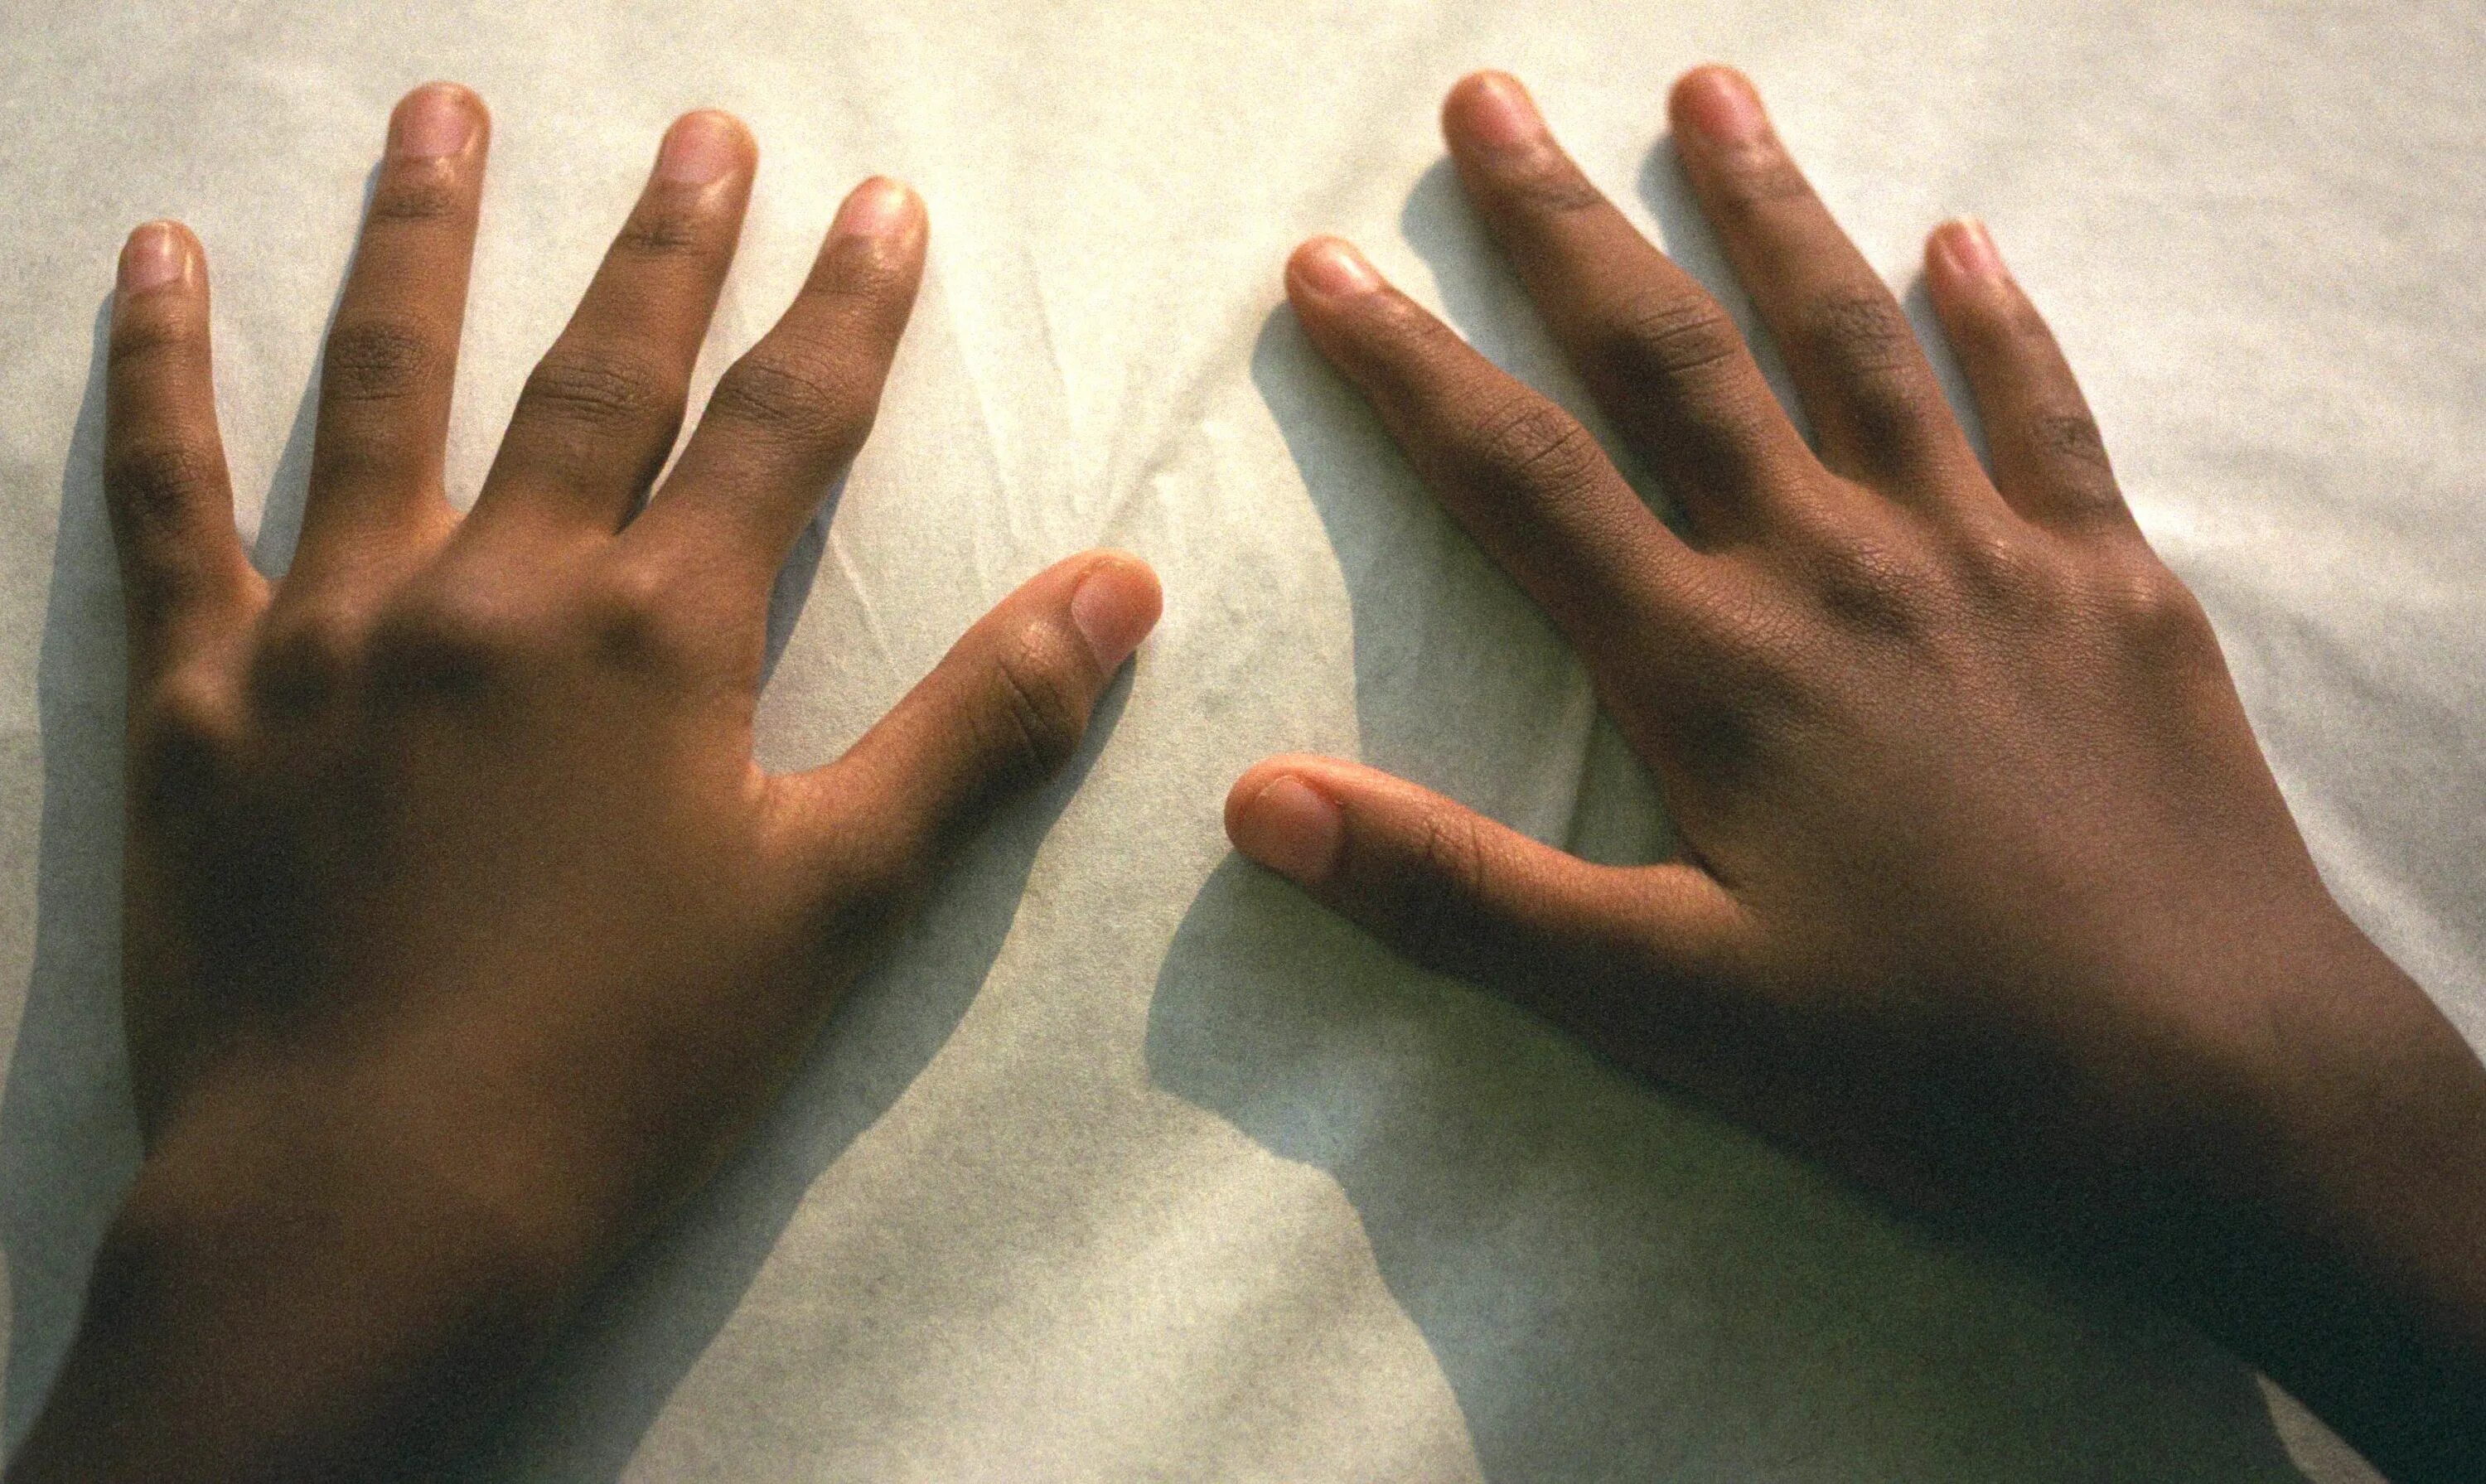 Ревматоидным артритом Рейно. Ювенильный ревматоидный артрит кистей рук. Ревматоидный артрит синдром Рейно. Подагра ревматоидный артрит кистей. Изменения кисти рук